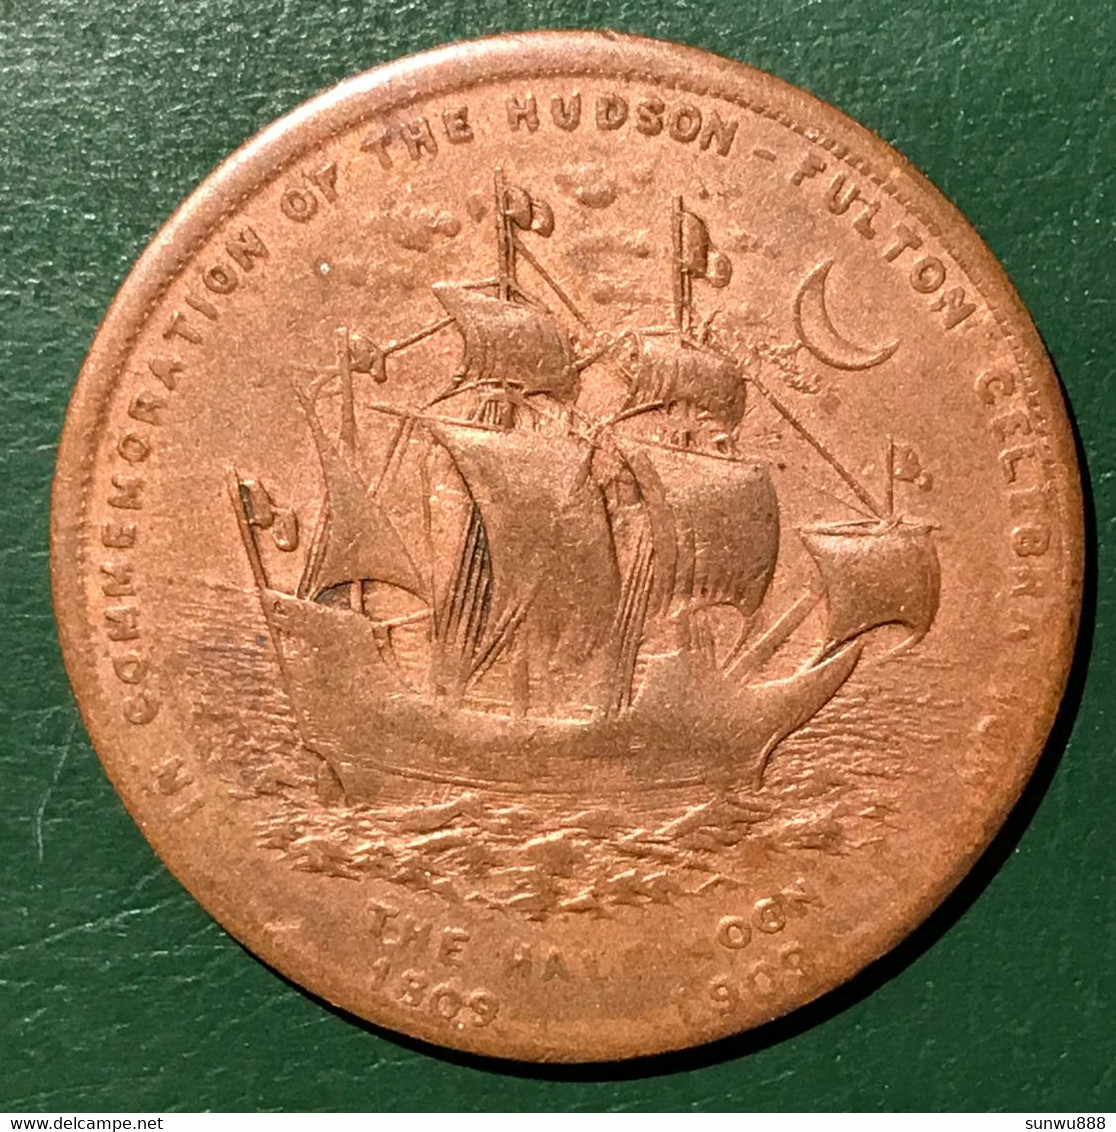 Hudson Fulton Celebration The Half Moon 1609-1909 New York Boat Medal Token RARE (fixed Price) - Professionali/Di Società